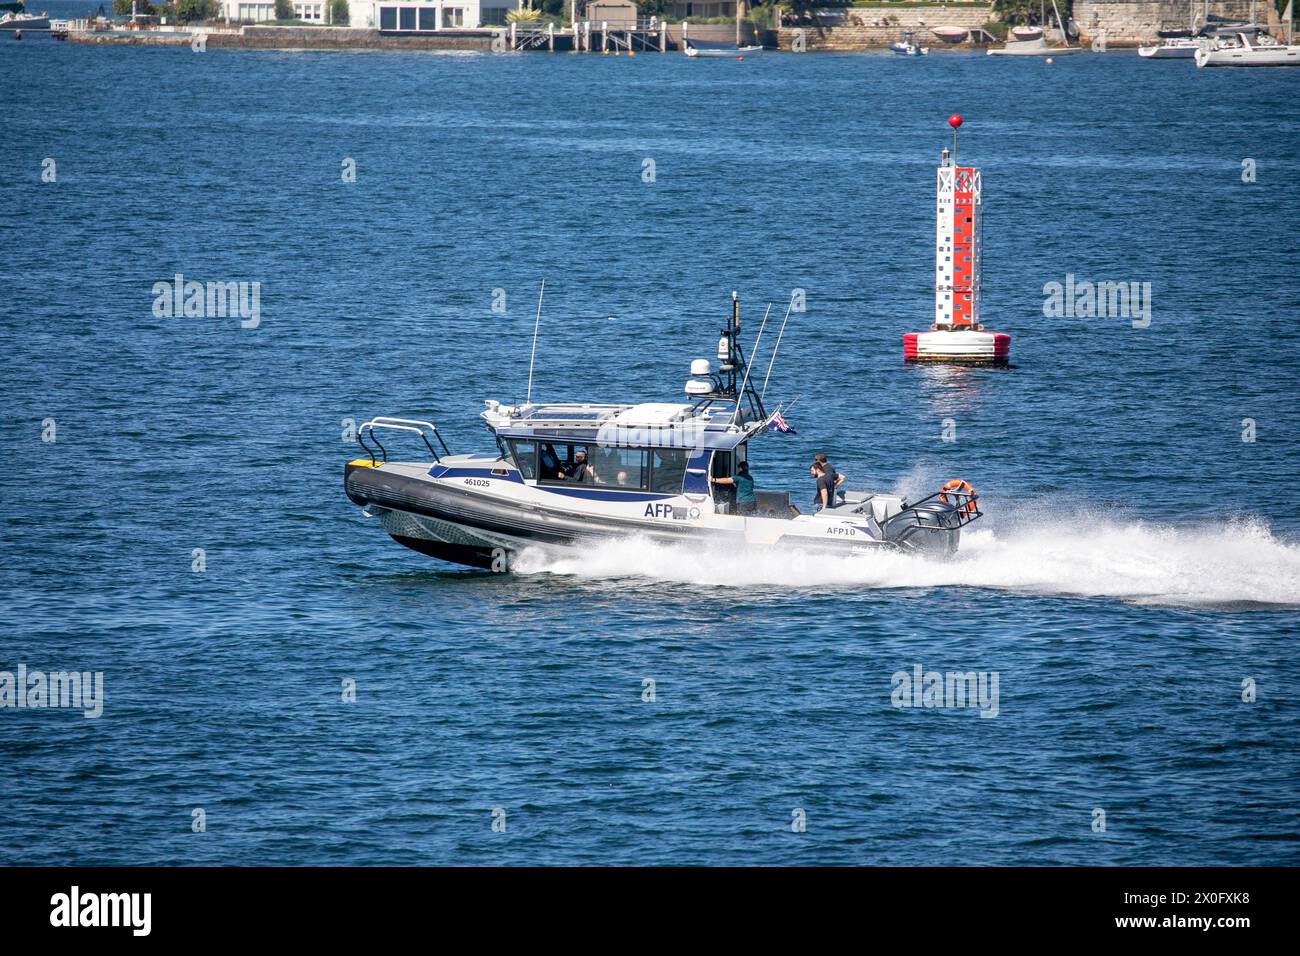 La police fédérale australienne, l'agence fédérale australienne chargée de l'application de la loi, avec son bateau RIB à grande vitesse AFP 10 sur le port de Sydney, un bateau construit par Yamba Banque D'Images